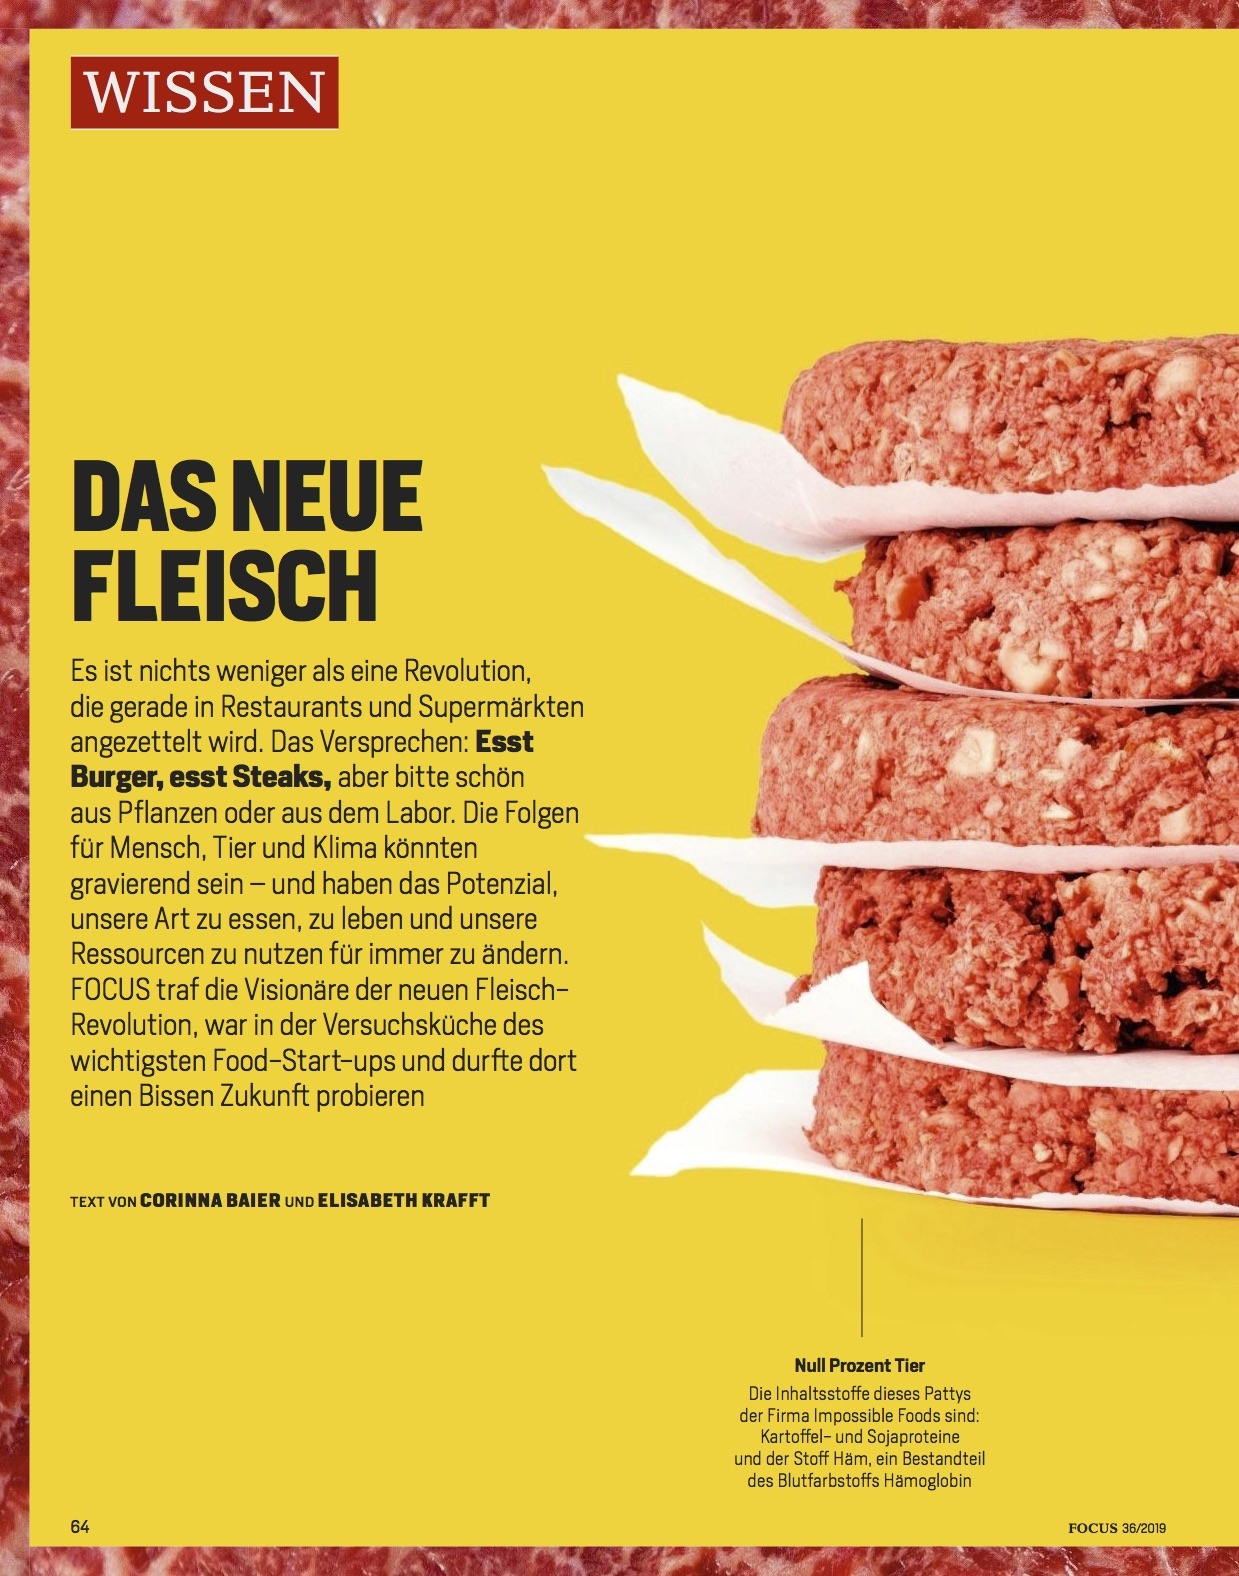 FOCUS Magazin FOCUS Magazin - Das neue Fleisch